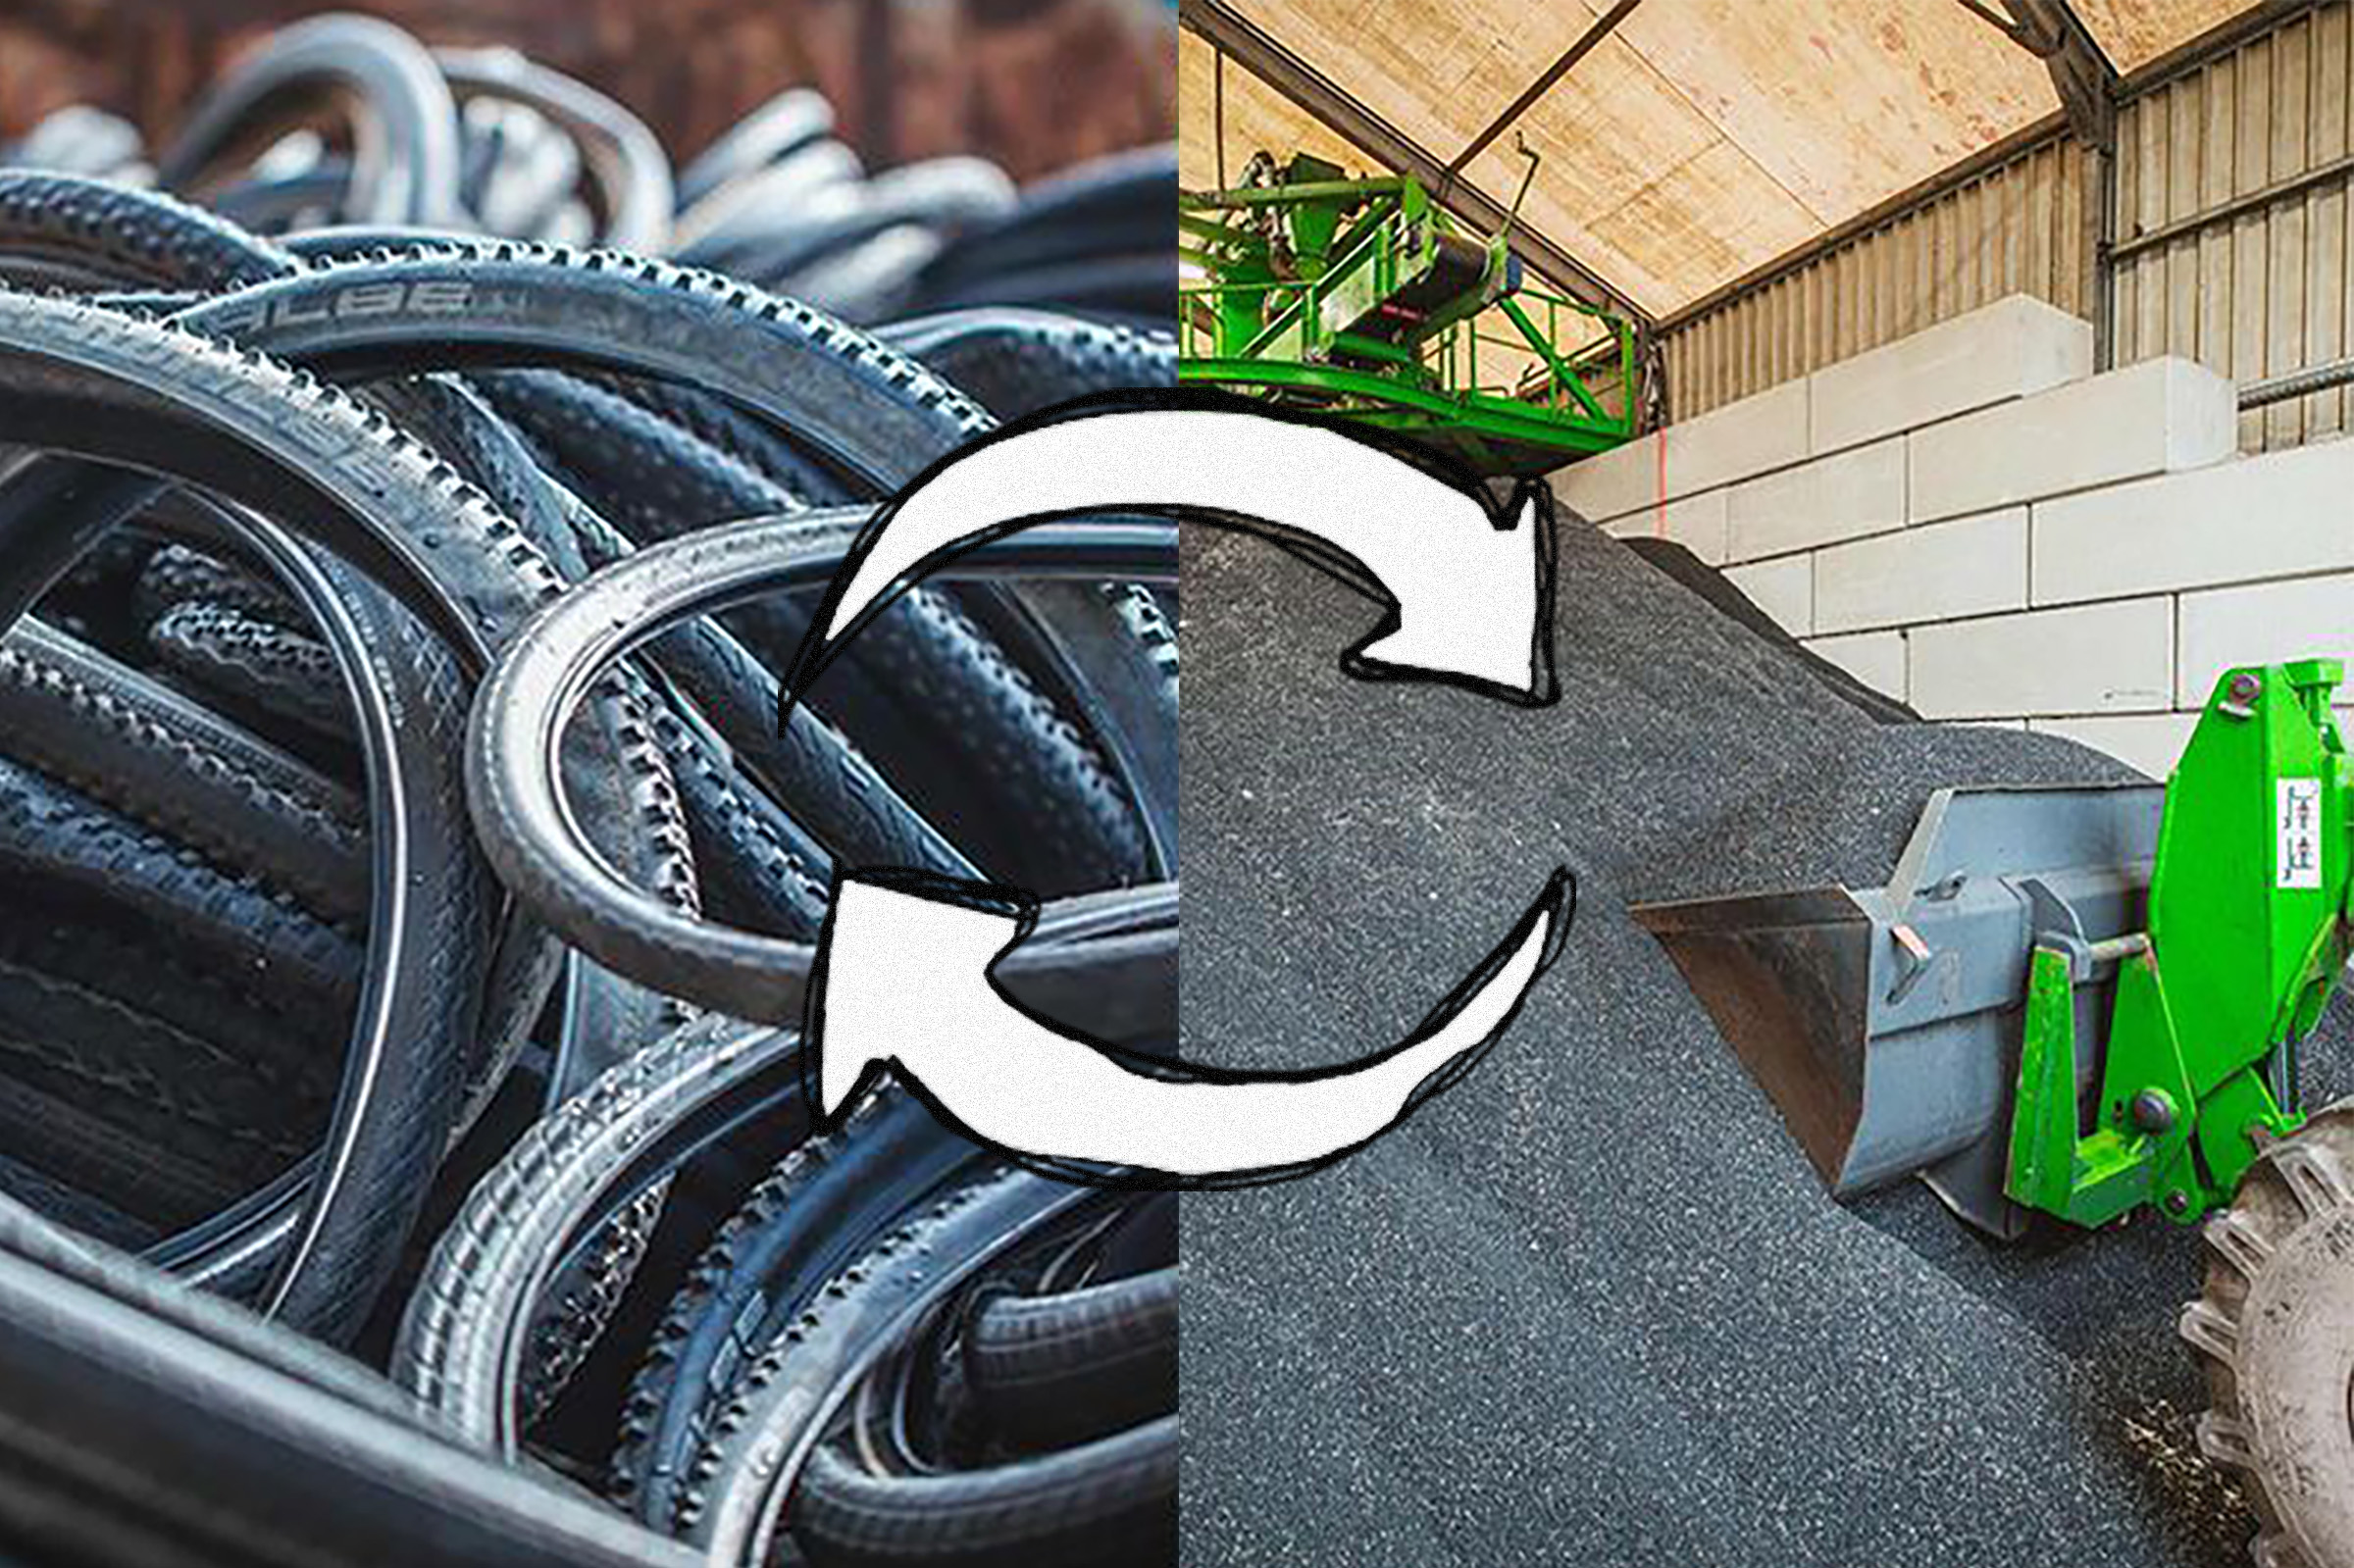 Schwalbe Reifen-Recycling angelaufen: Der Kreis schließt sich - MTB-News.de